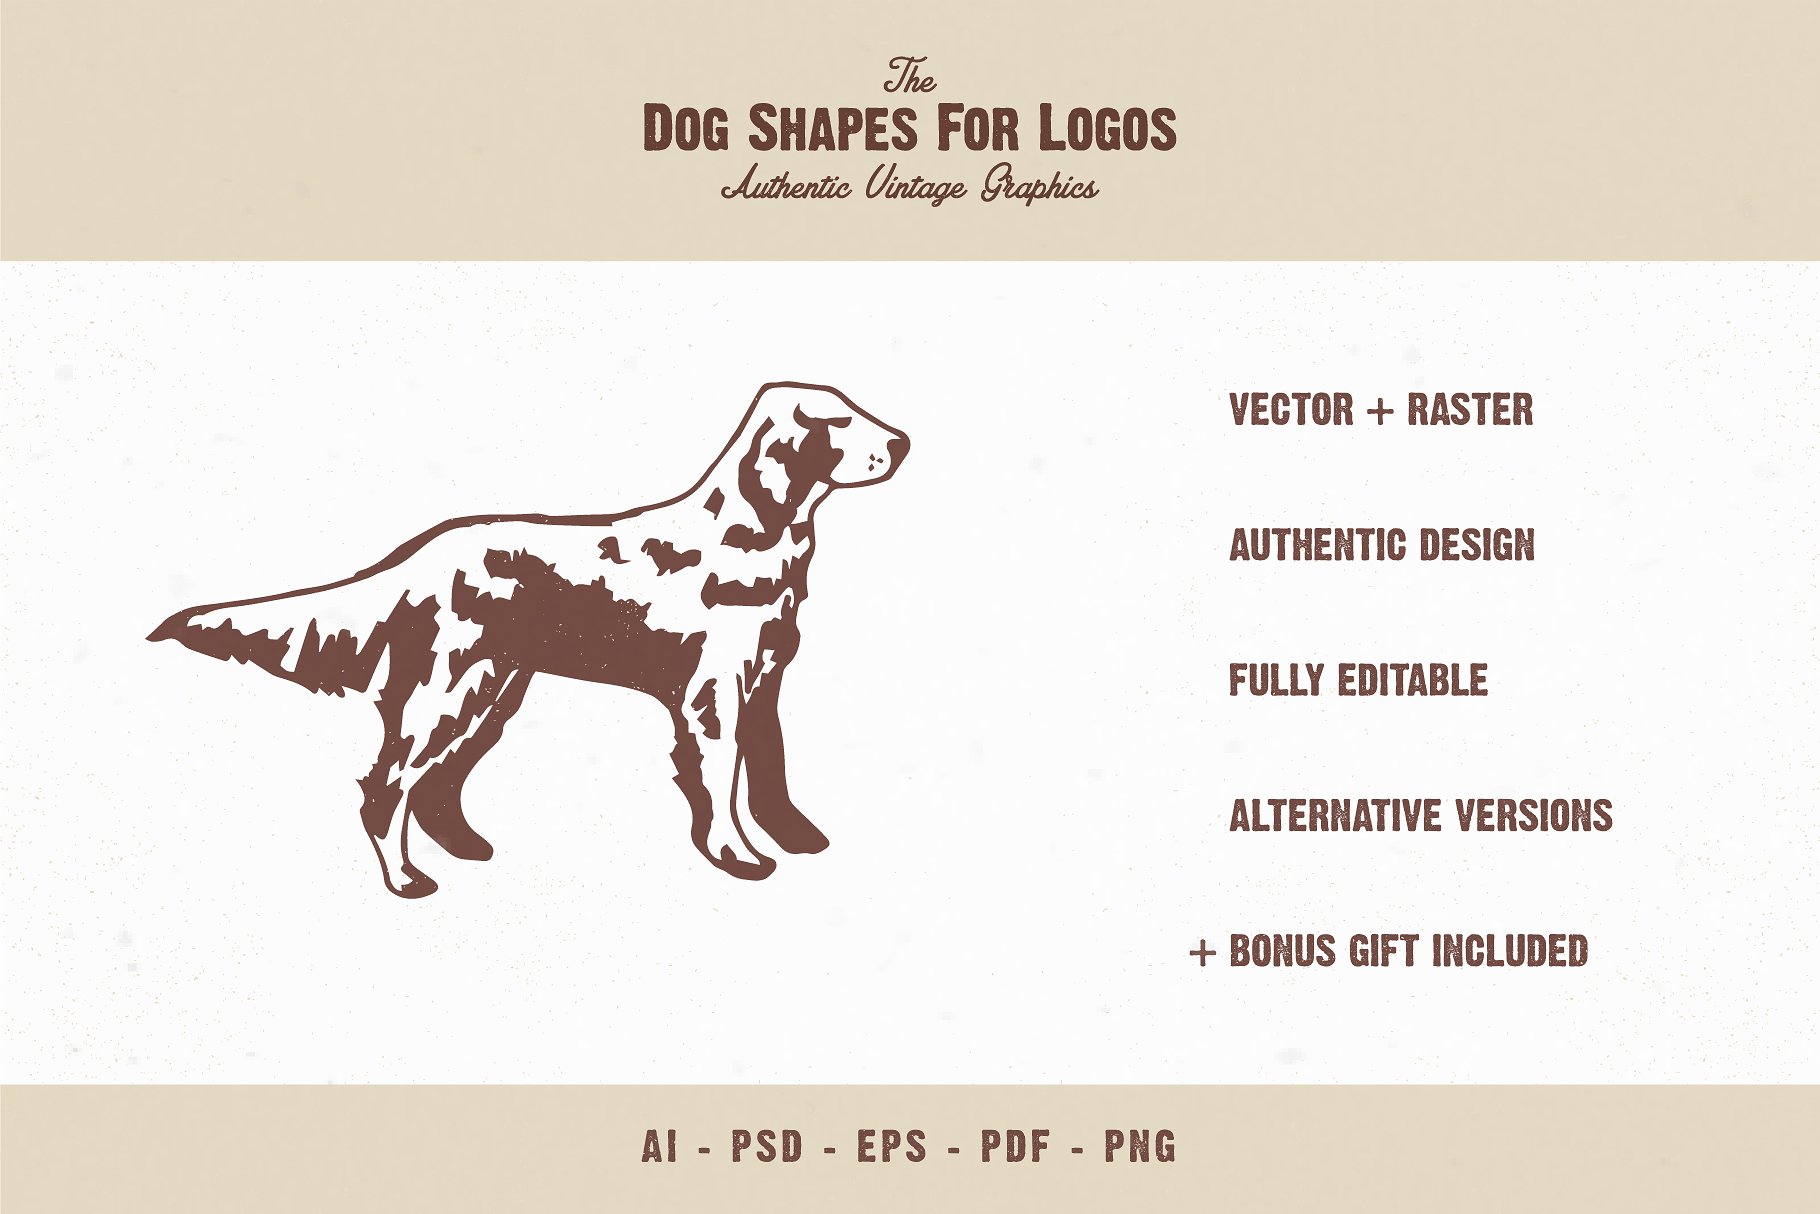 宠物狗形状剪影Logo设计素材包 The Dog Shapes For Logos Pack插图(1)